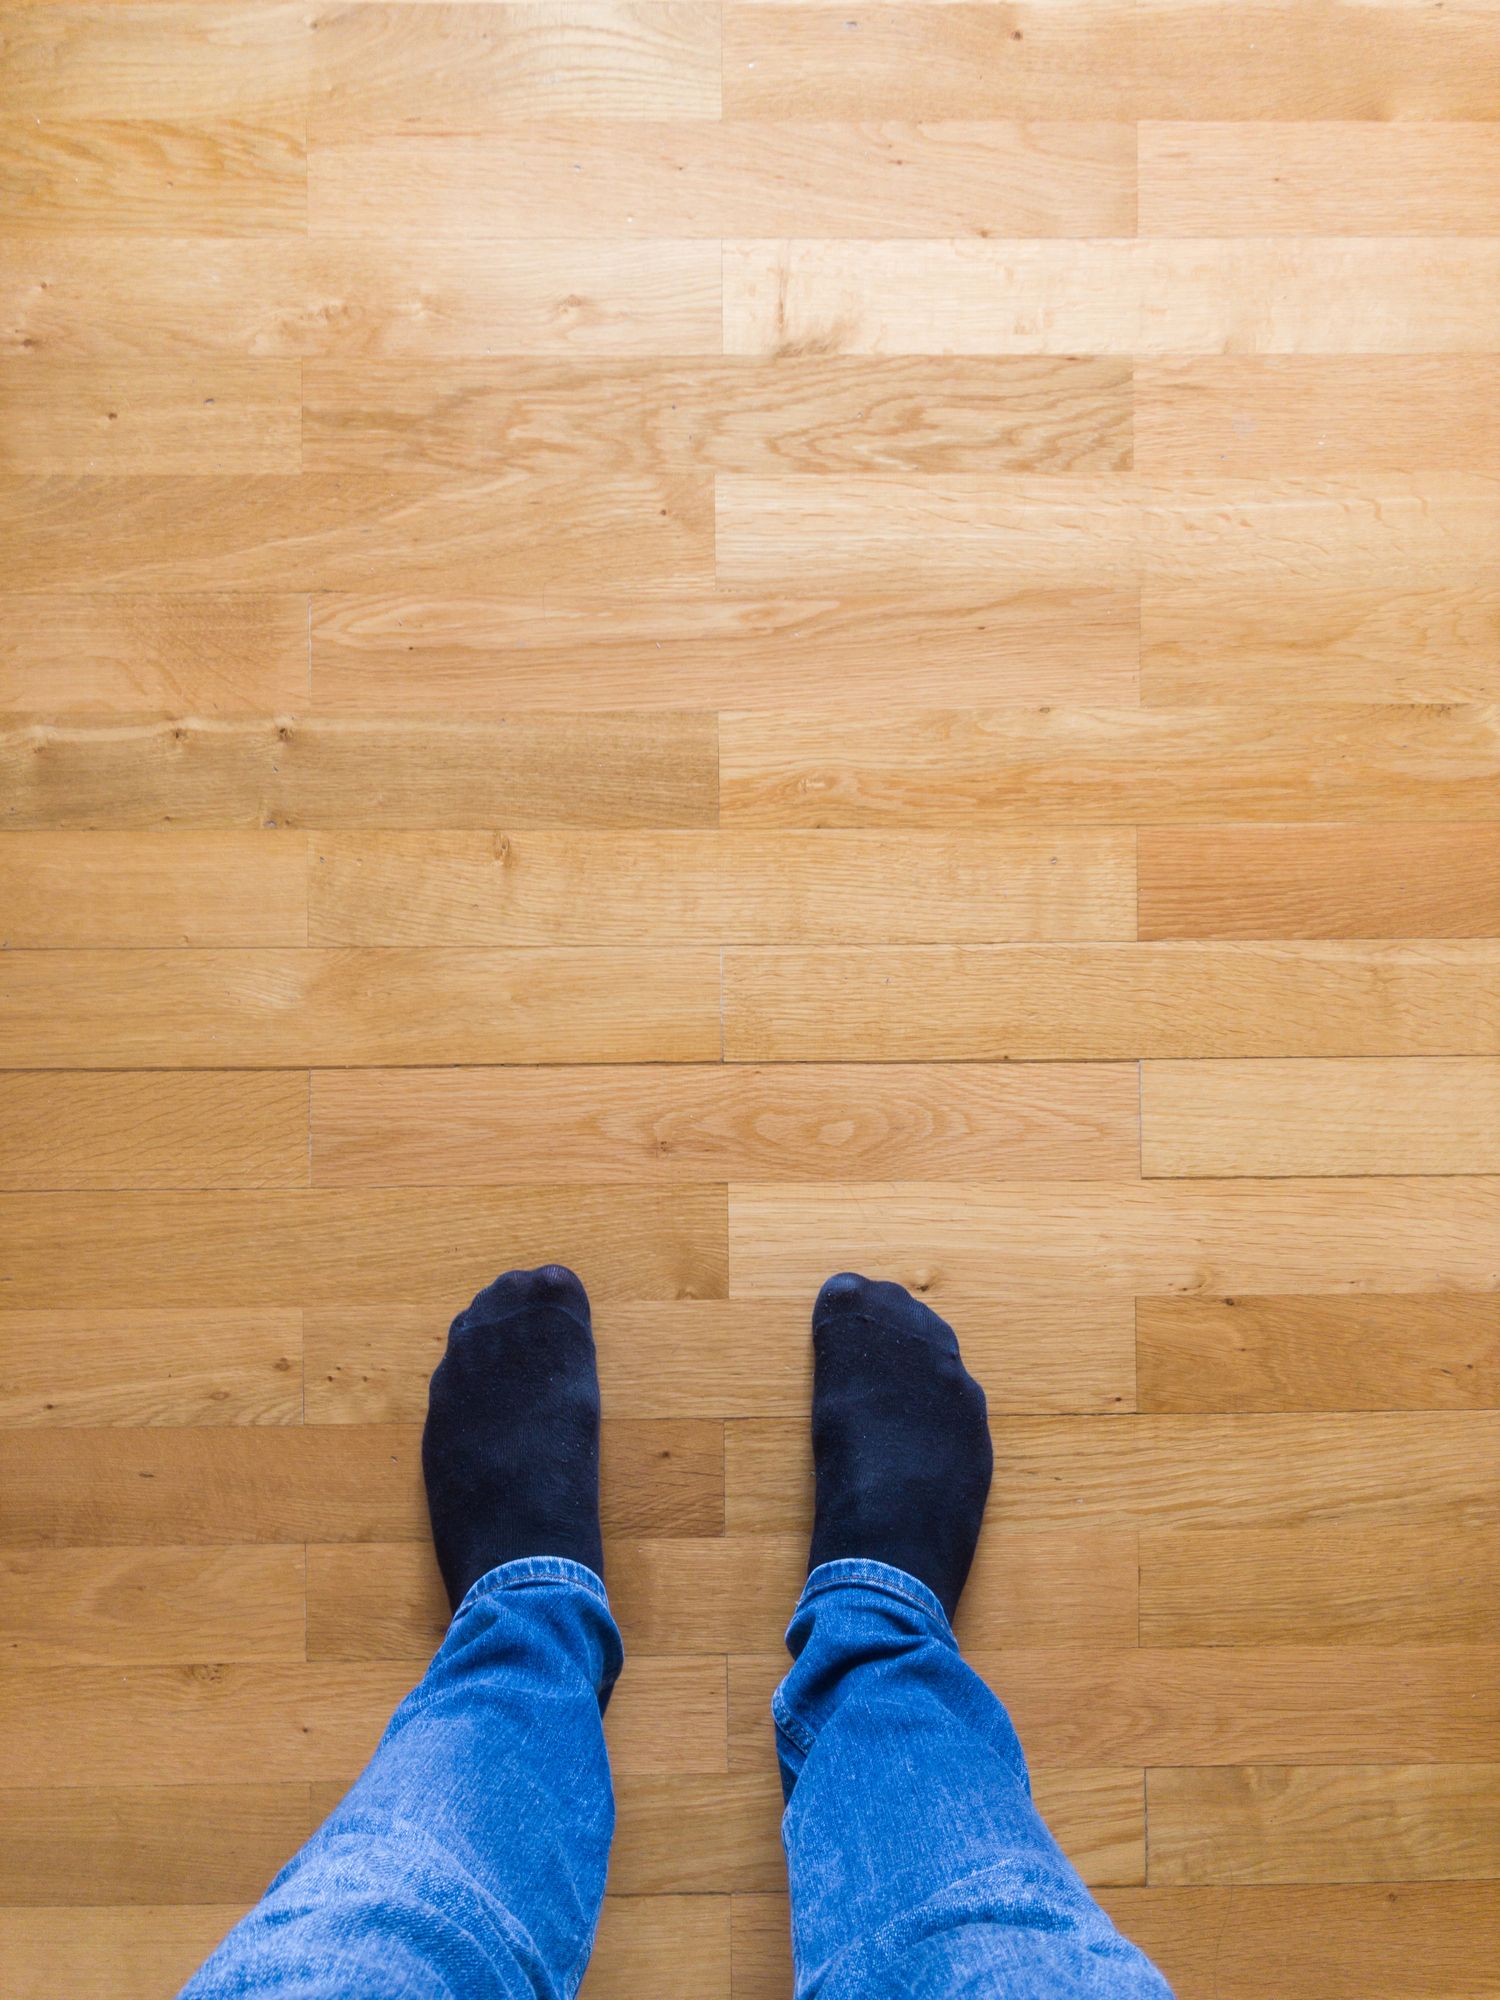 Squeaky Floor Repair, Why Does My Laminate Floor Creak When I Walk On It